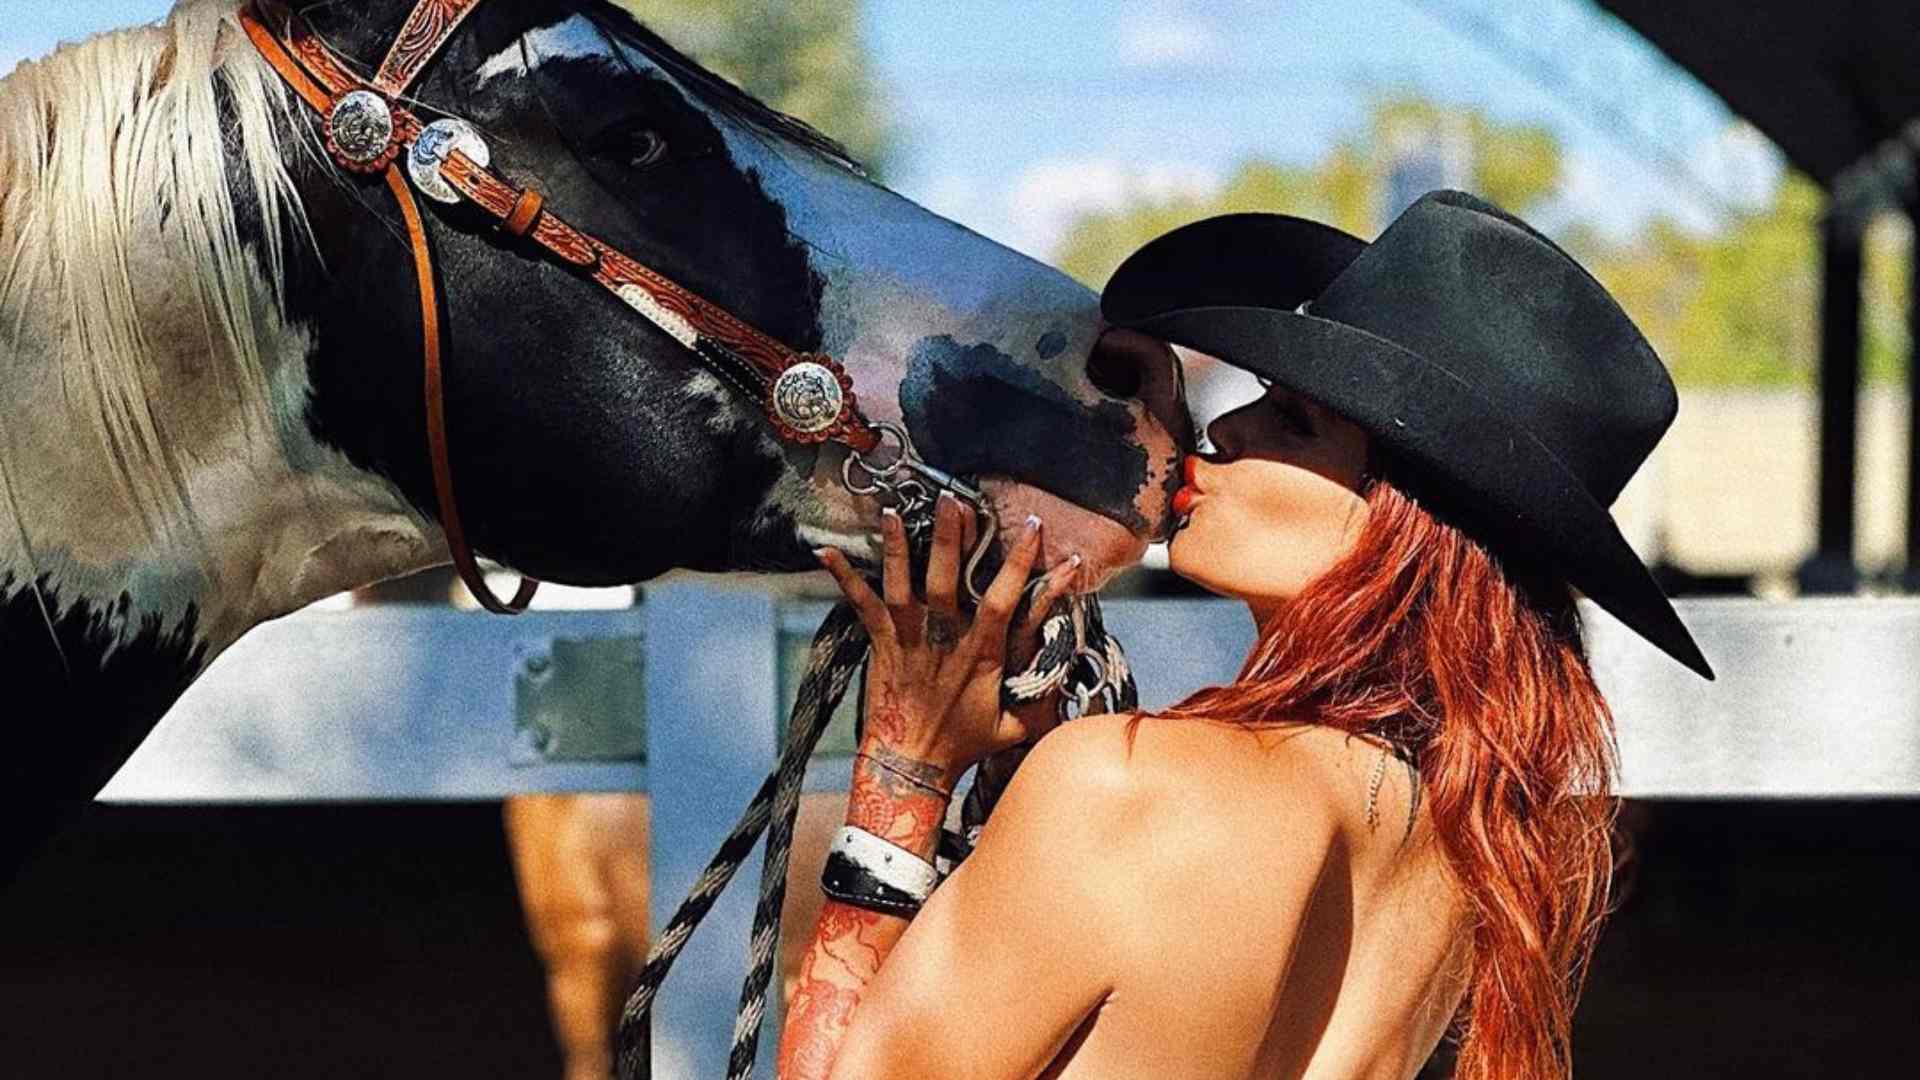 Muere Elena Larrea, mexicana que se hizo viral por financiar santuario de caballos con OnlyFans